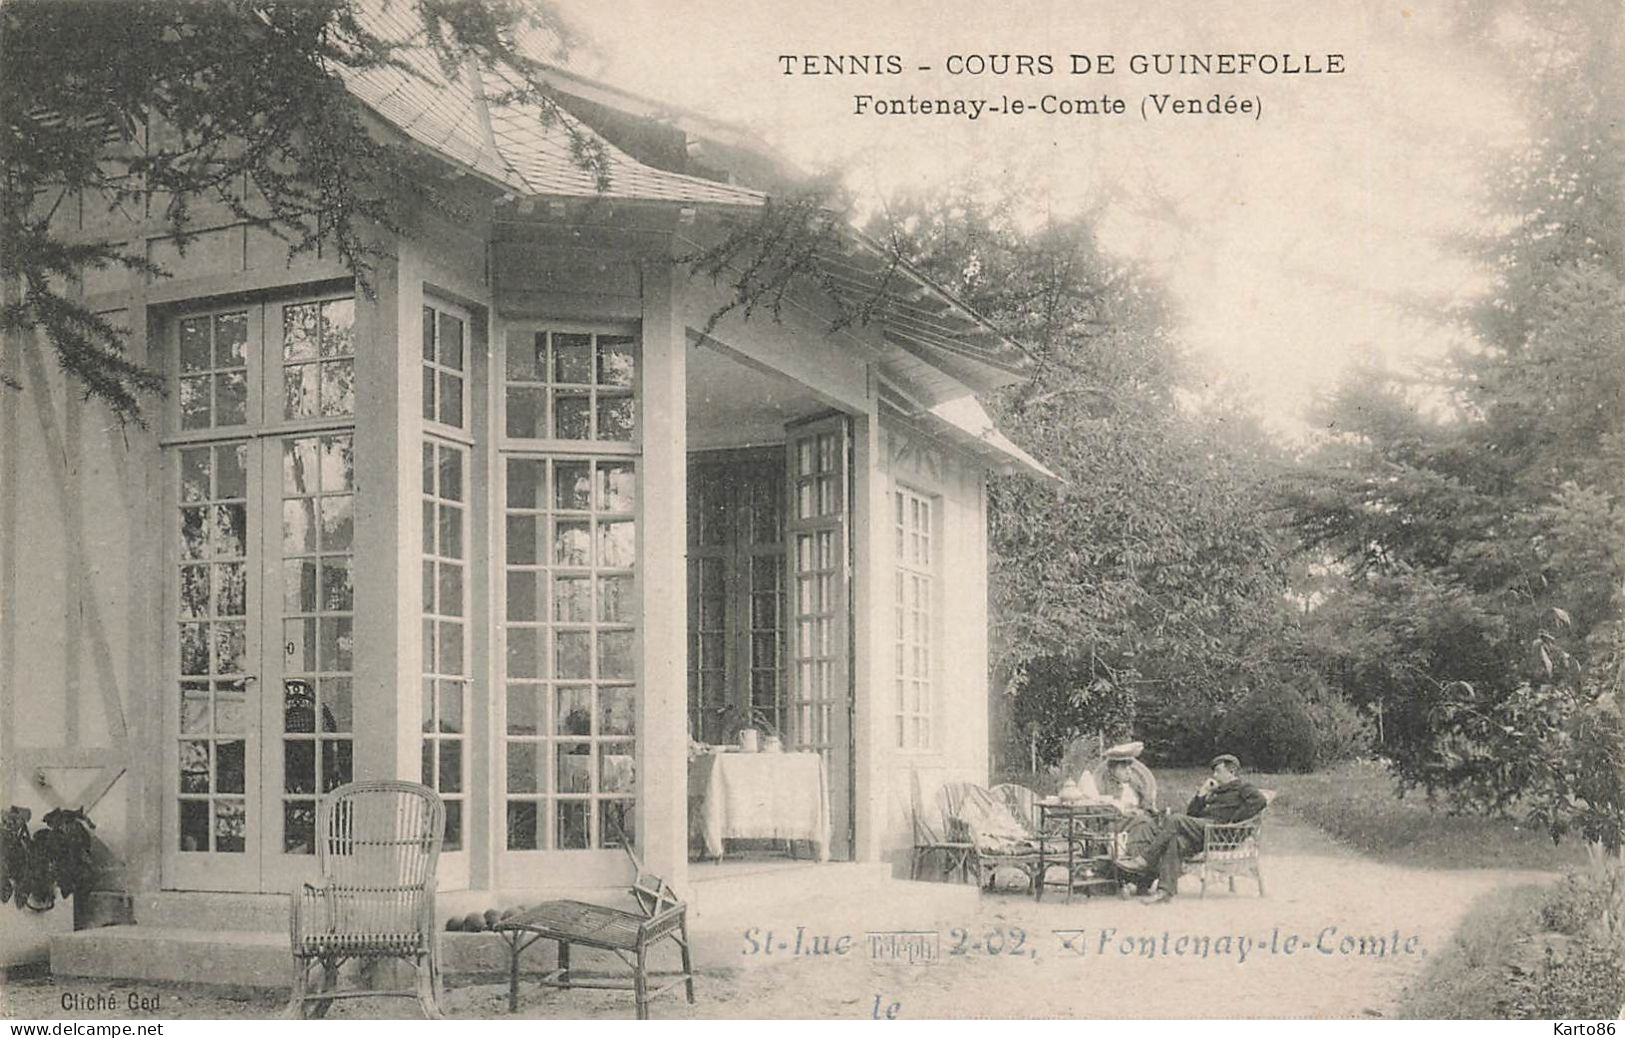 Fontenay Le Comte * Tennis Cours De Guinefolle * St Luc Tel2-02 * Sport - Fontenay Le Comte